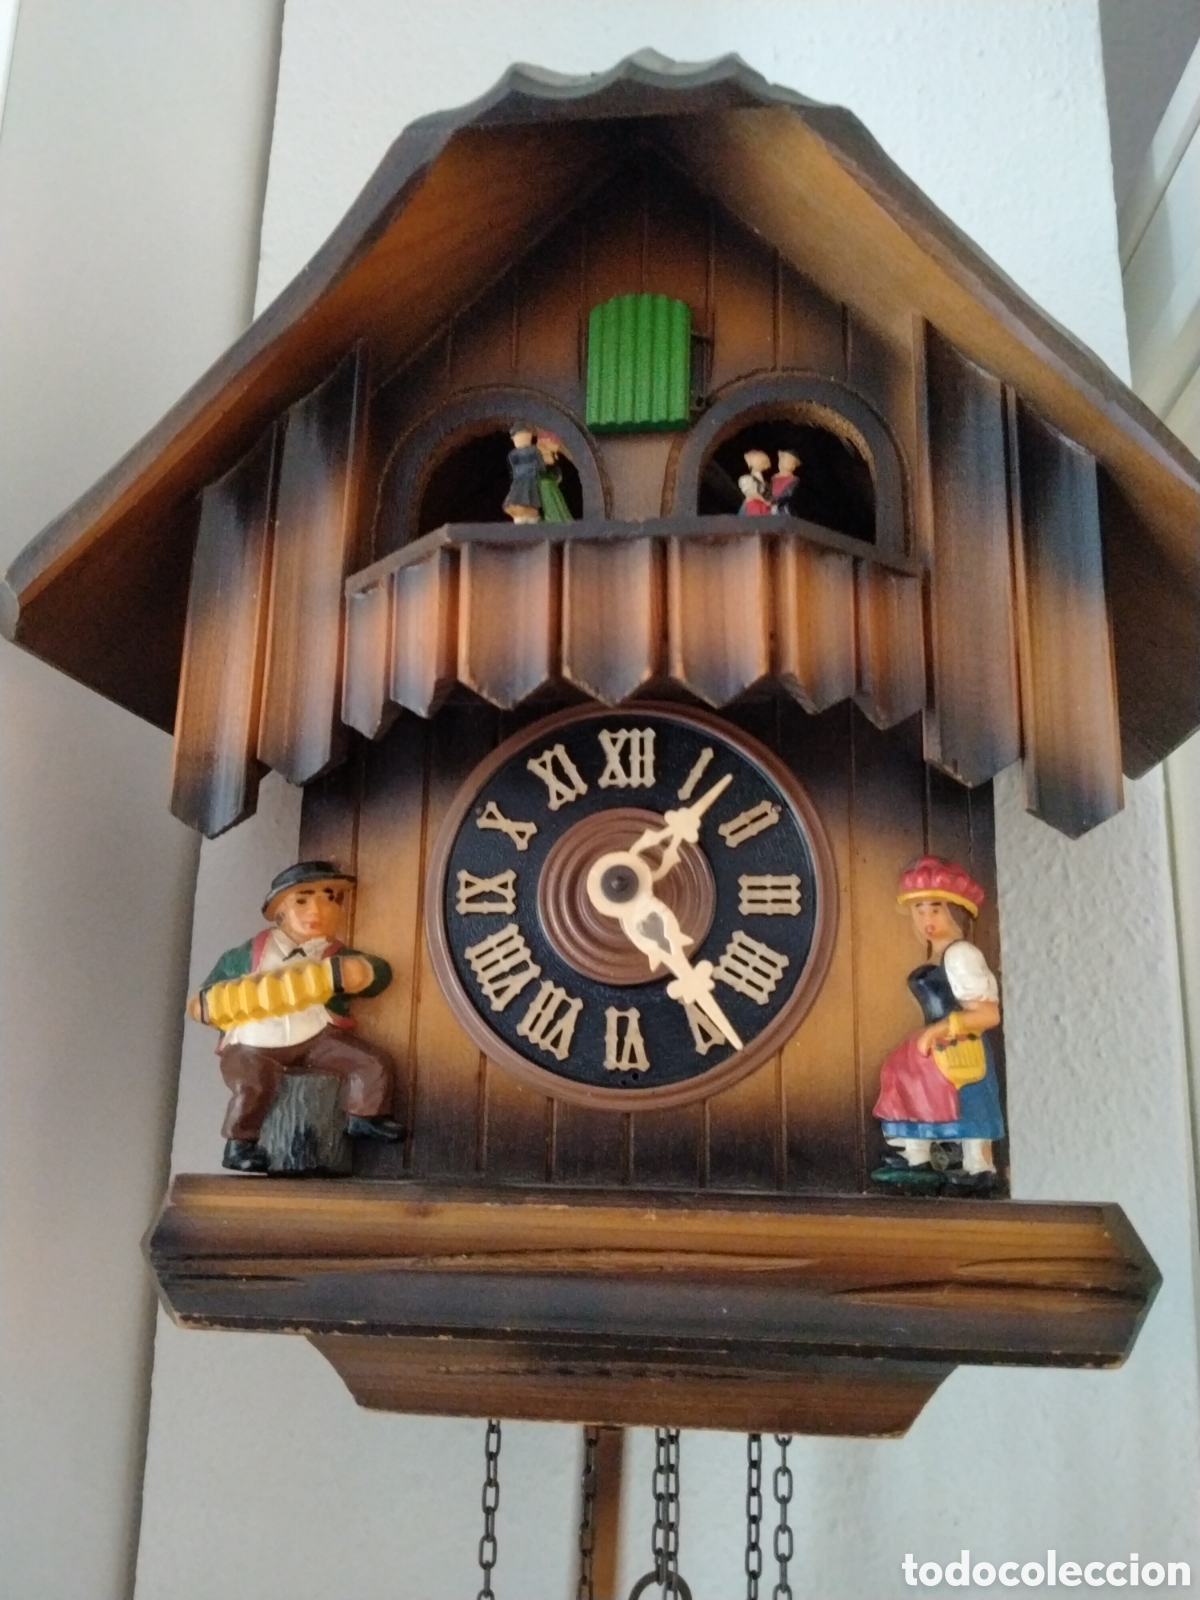 Antiguo reloj aleman, cucu, en perfecto estado y funciona perfectament